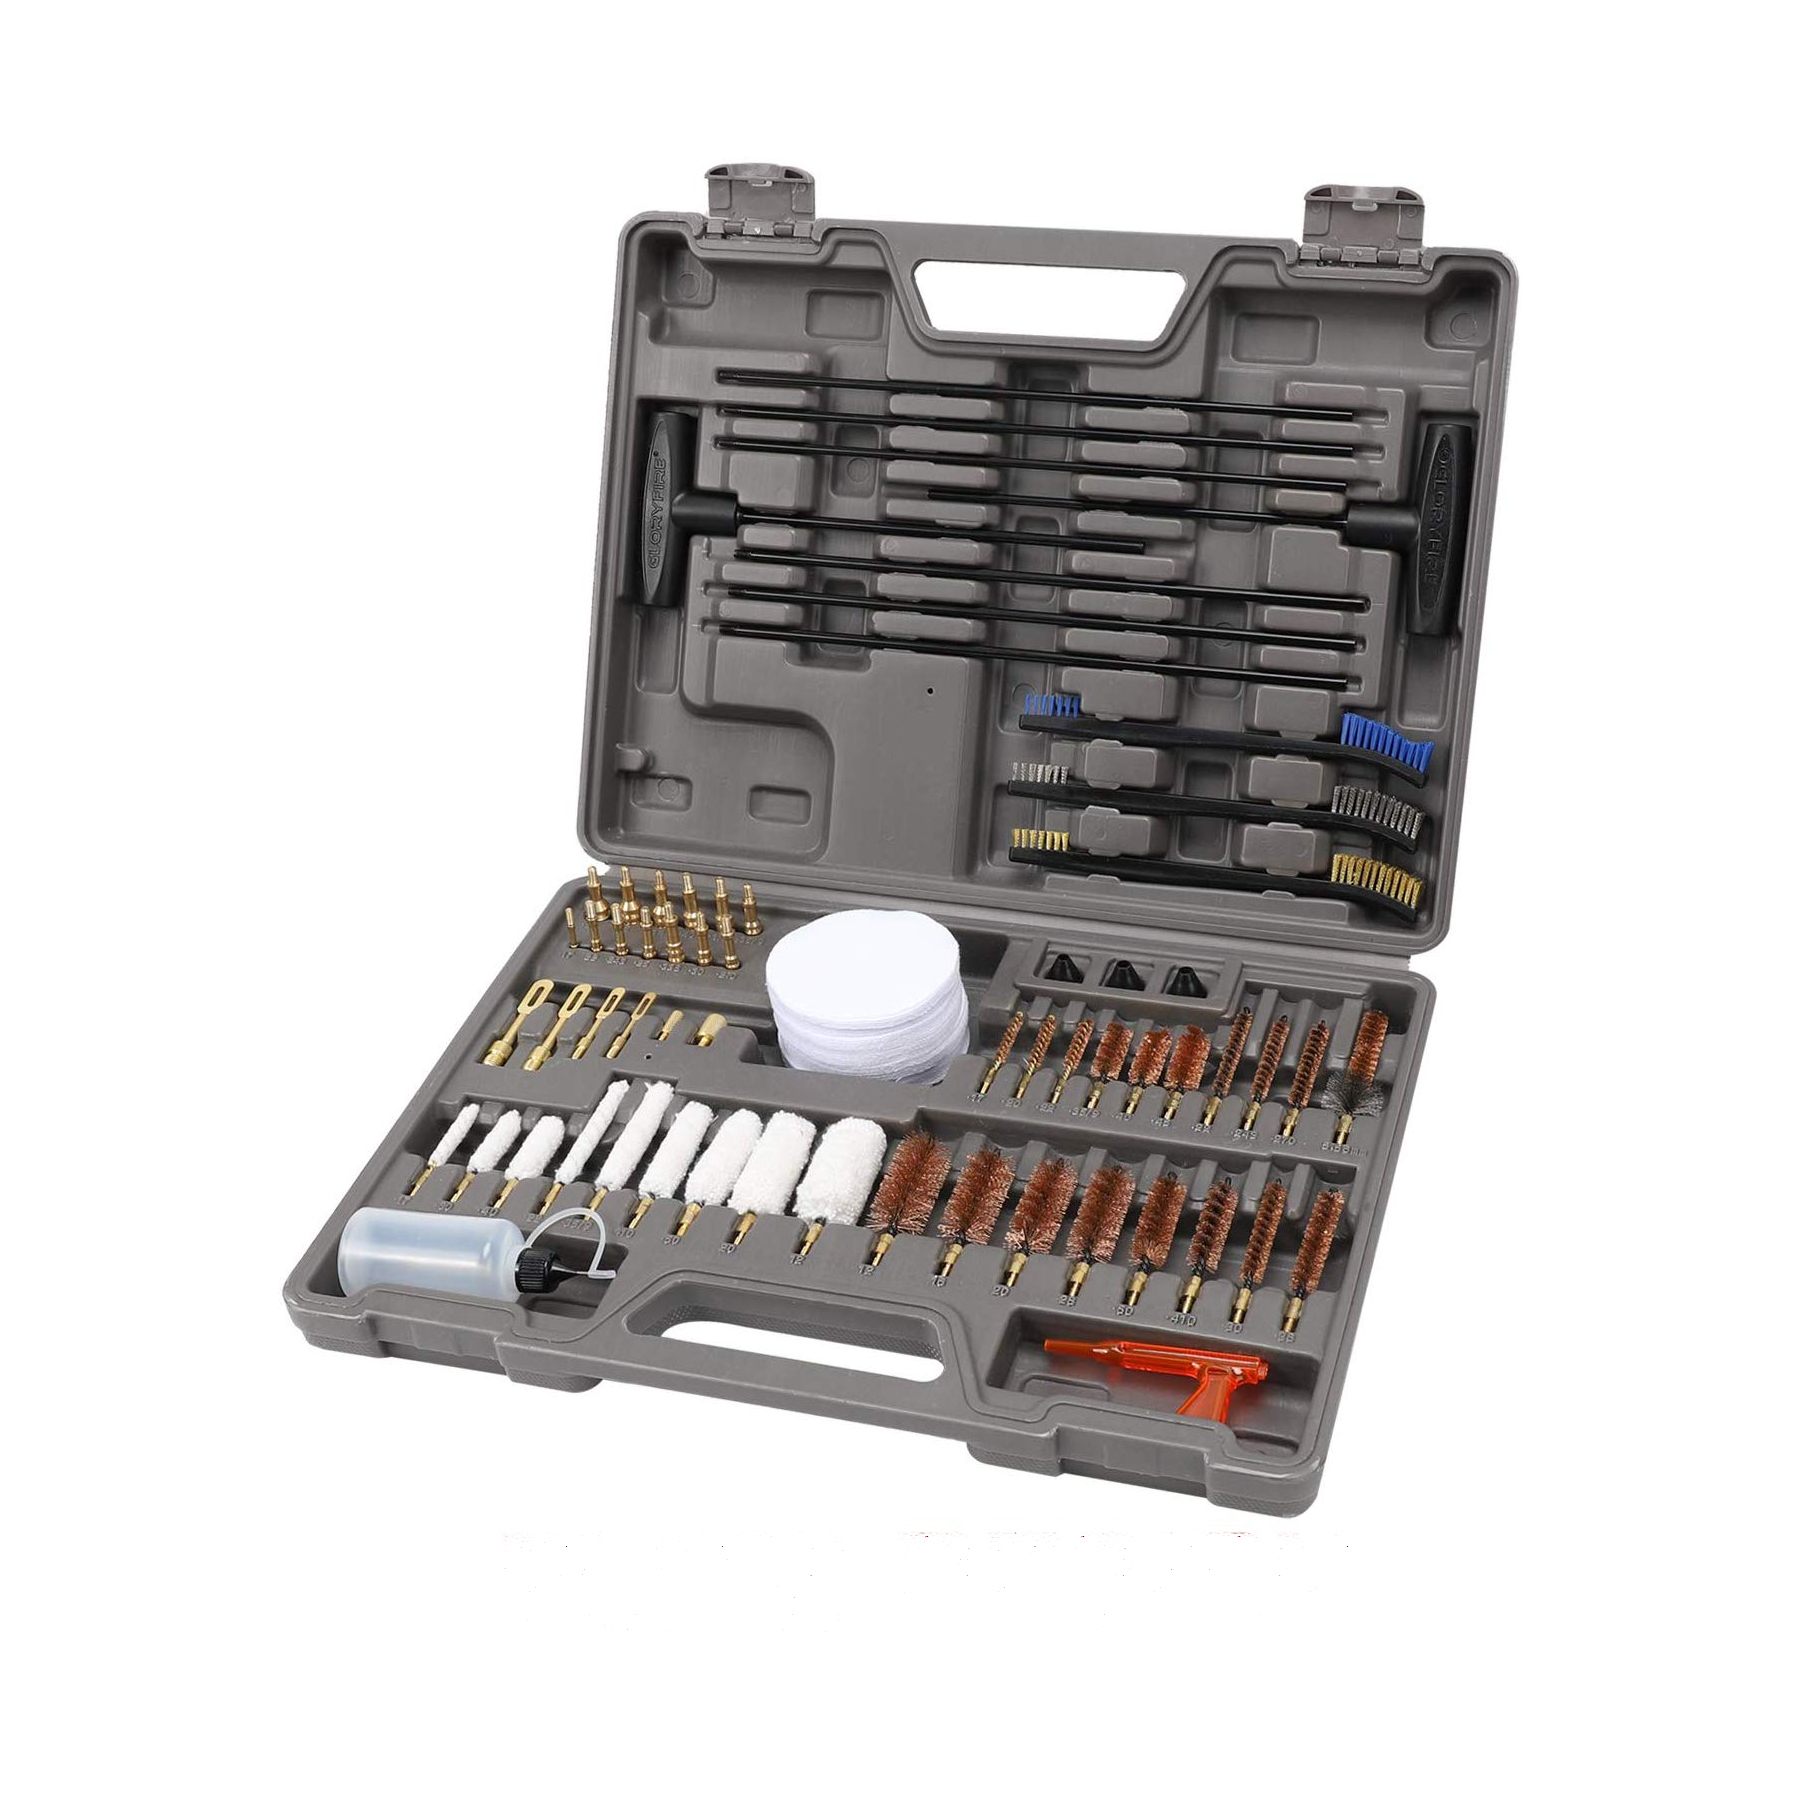 9X Cleaning Set Gun Brush Gun Cleaning Kit For Rifle Pistol Handgun Shotgun A1 